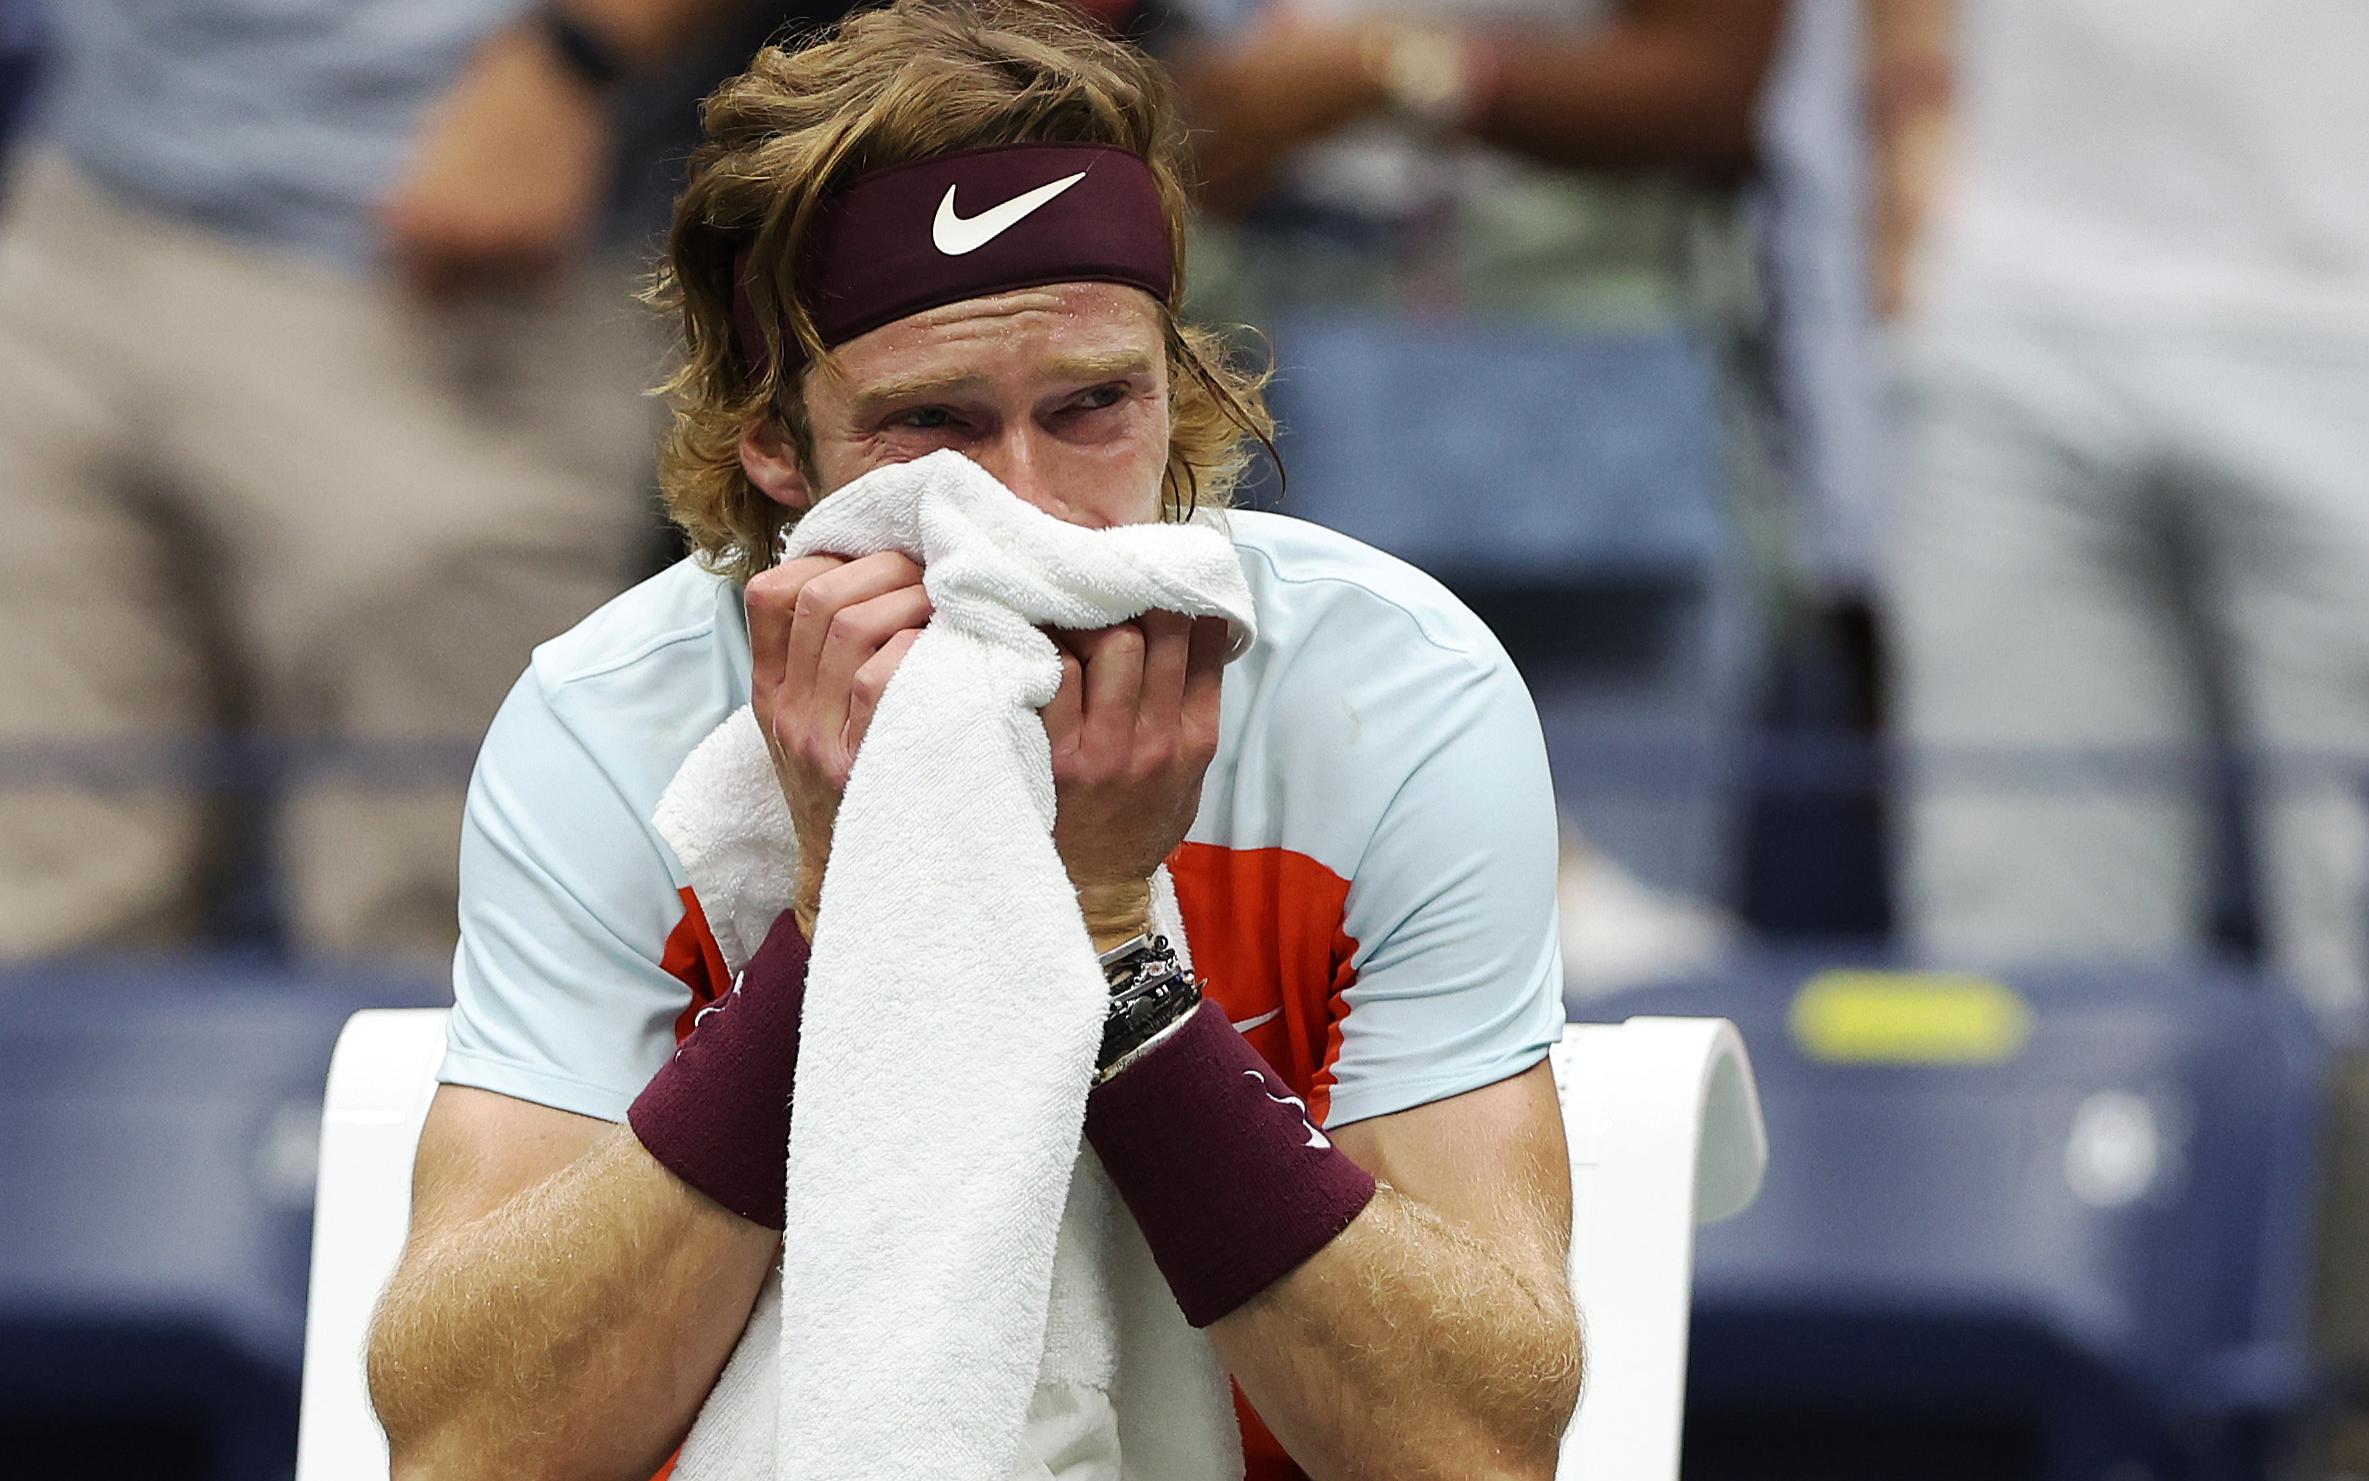 Рублев расплакался во время четвертьфинального матча на US Open. Видео